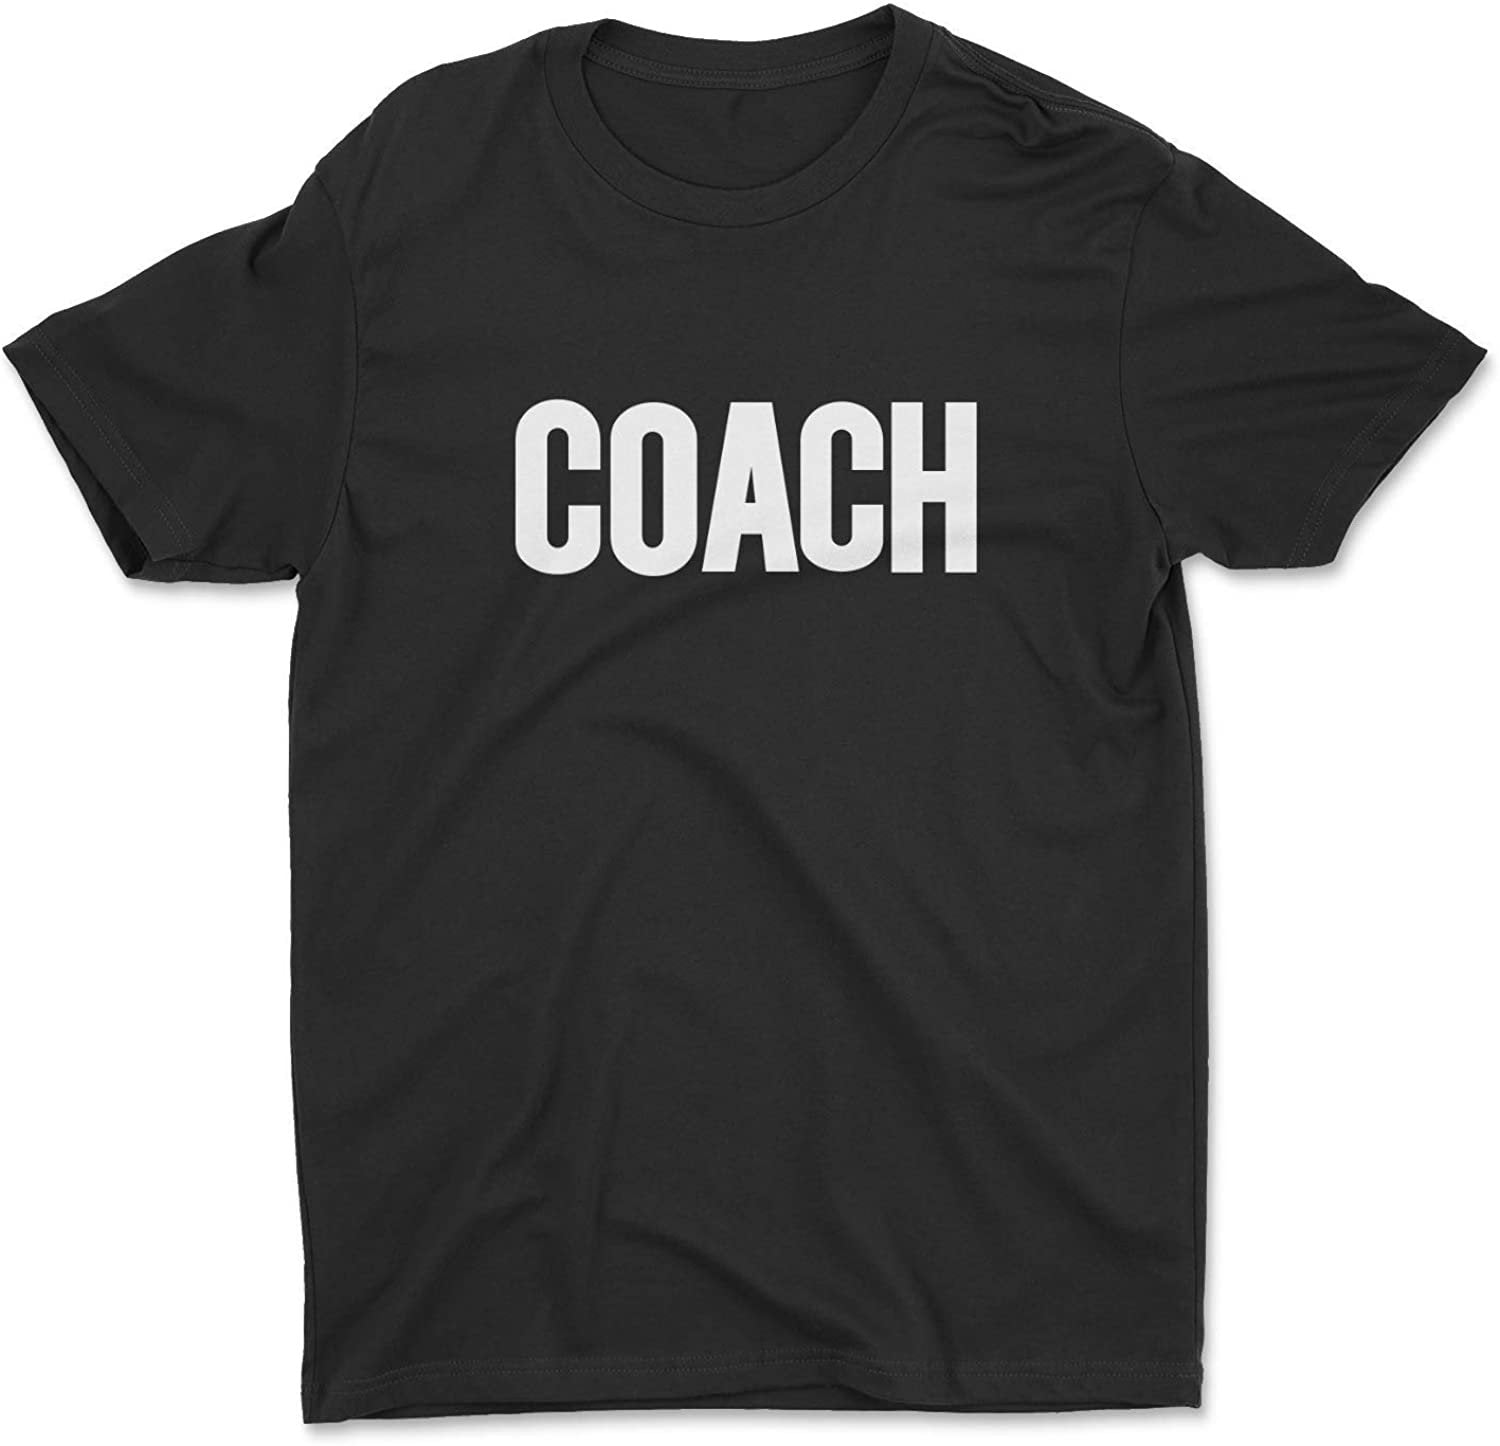 Coach Men's T-Shirt (Solid Design, Black & White)